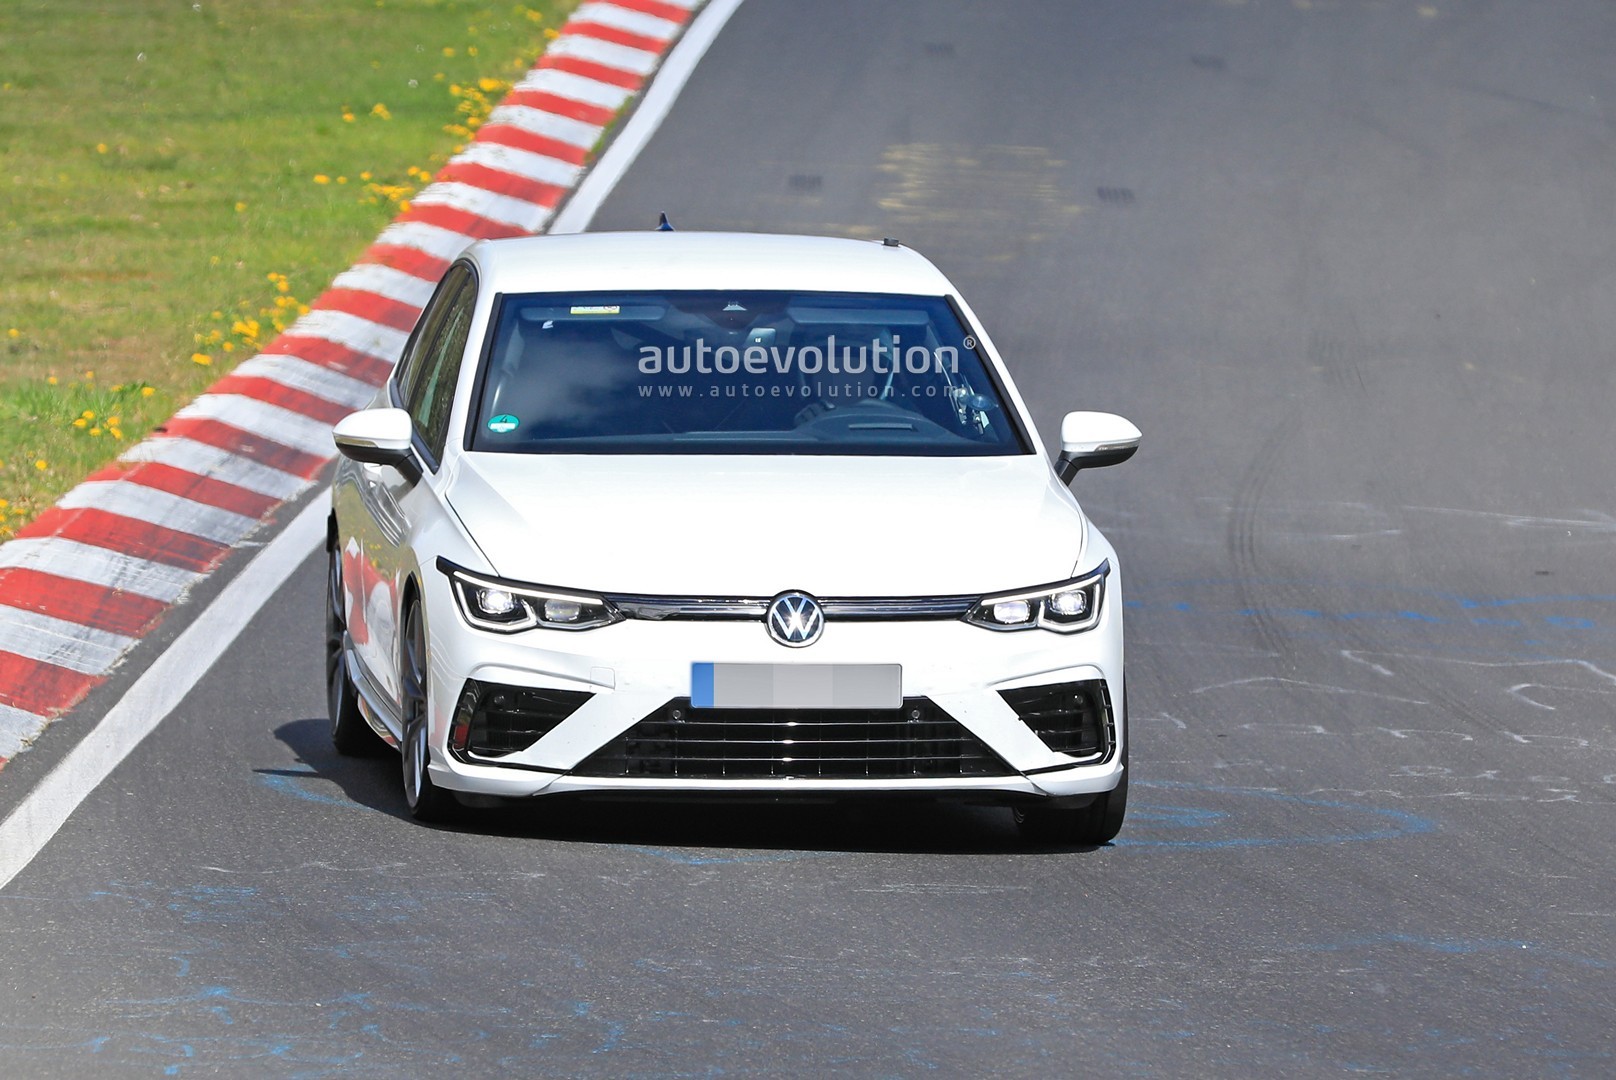 2021-volkswagen-golf-8-r-begins-nurburgring-testing-has-more-power-than-type-r_1.jpg